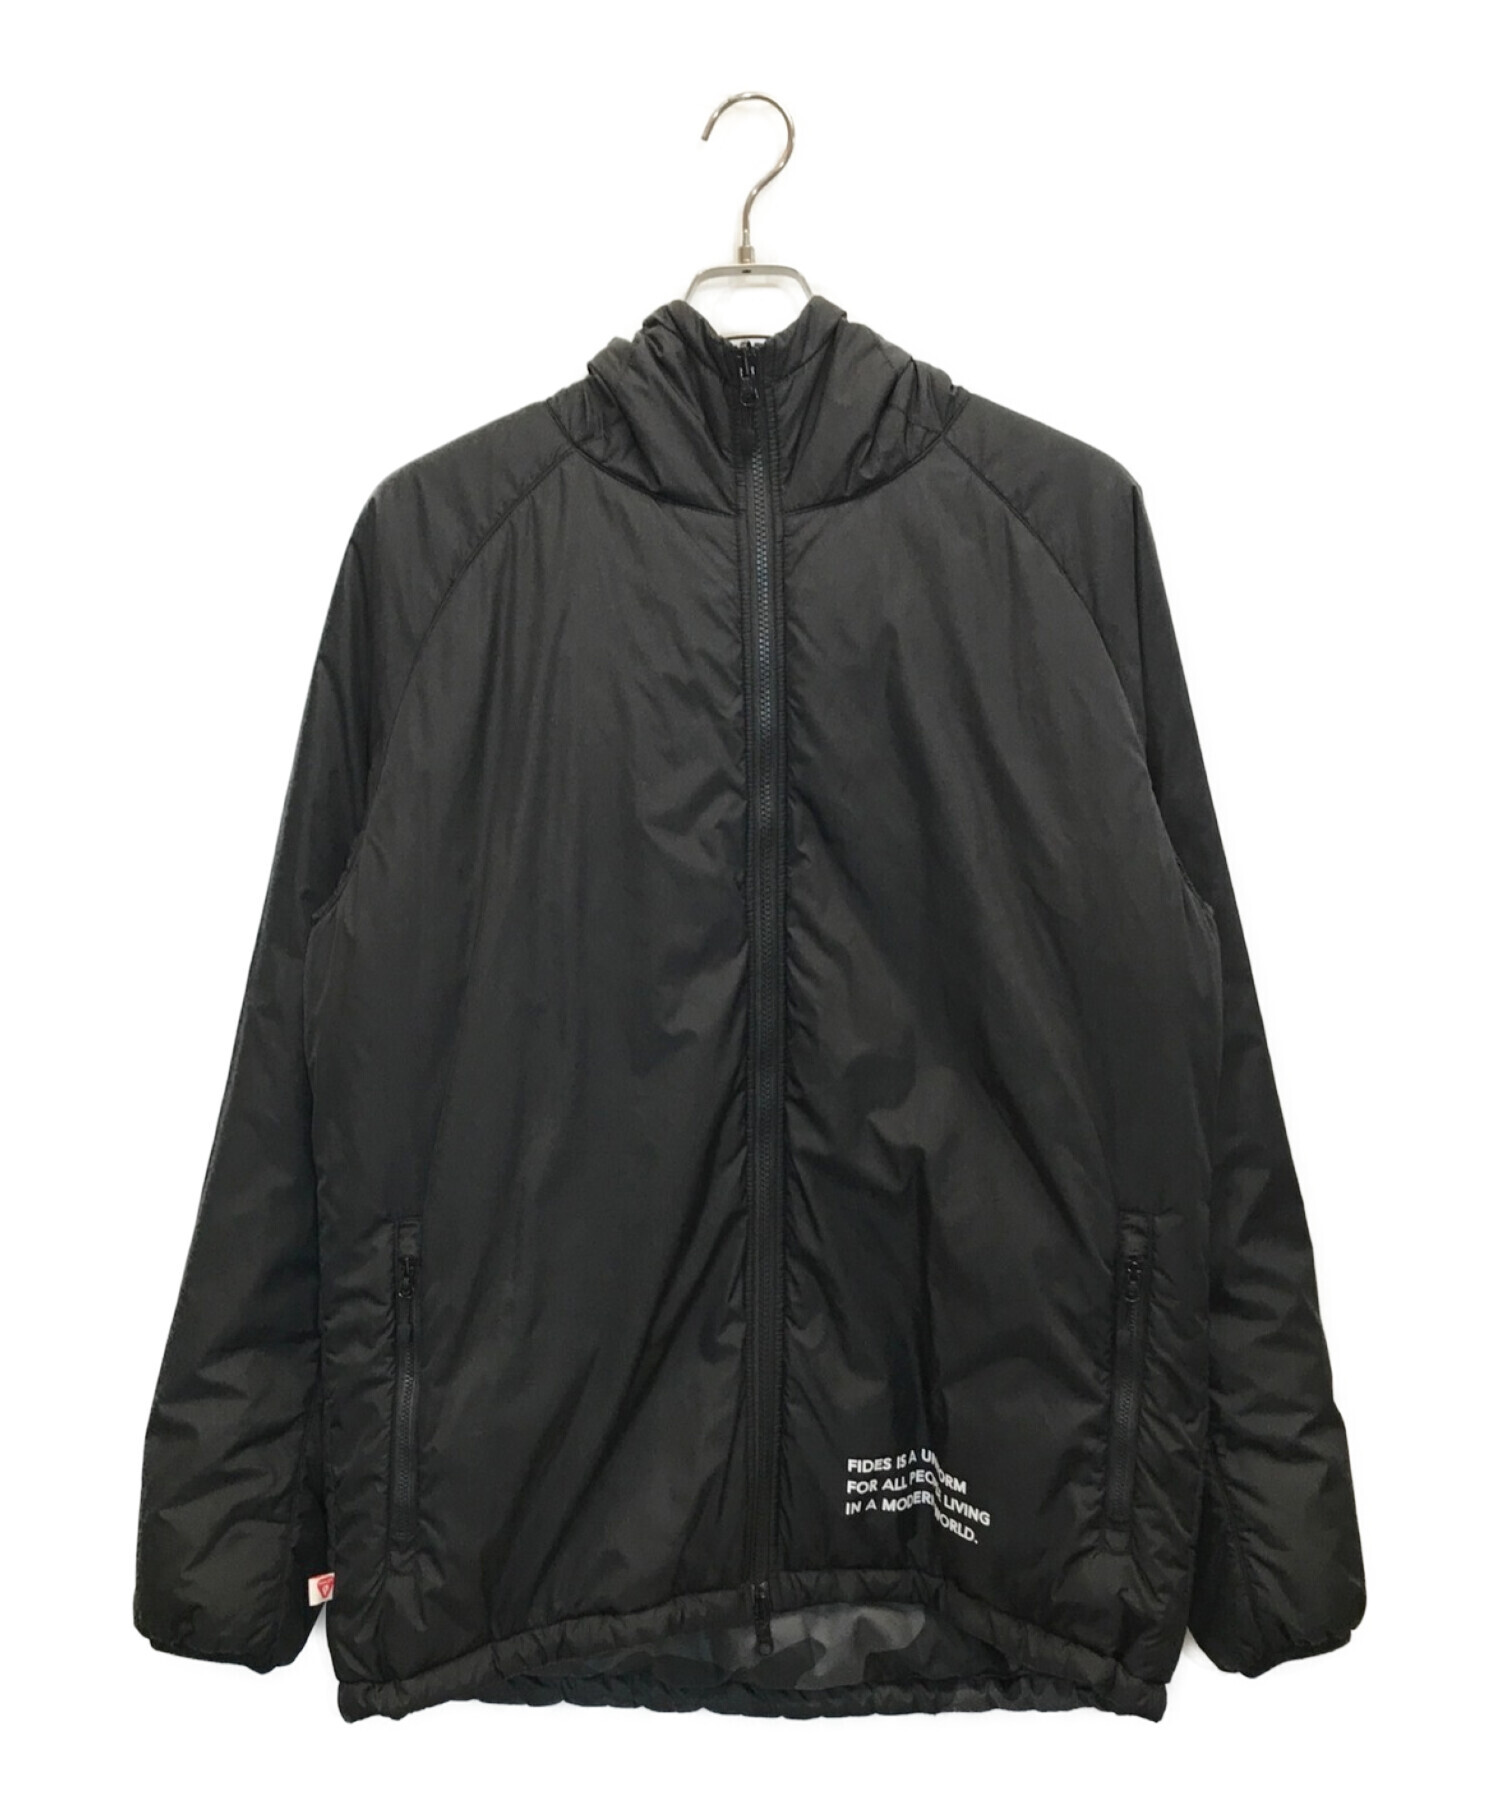 New Era (ニューエラ) FIDES (フィデス) REVERSIBLE PUFF JACKET リバーシブルパフジャケット ブラック×グレー  サイズ:XL